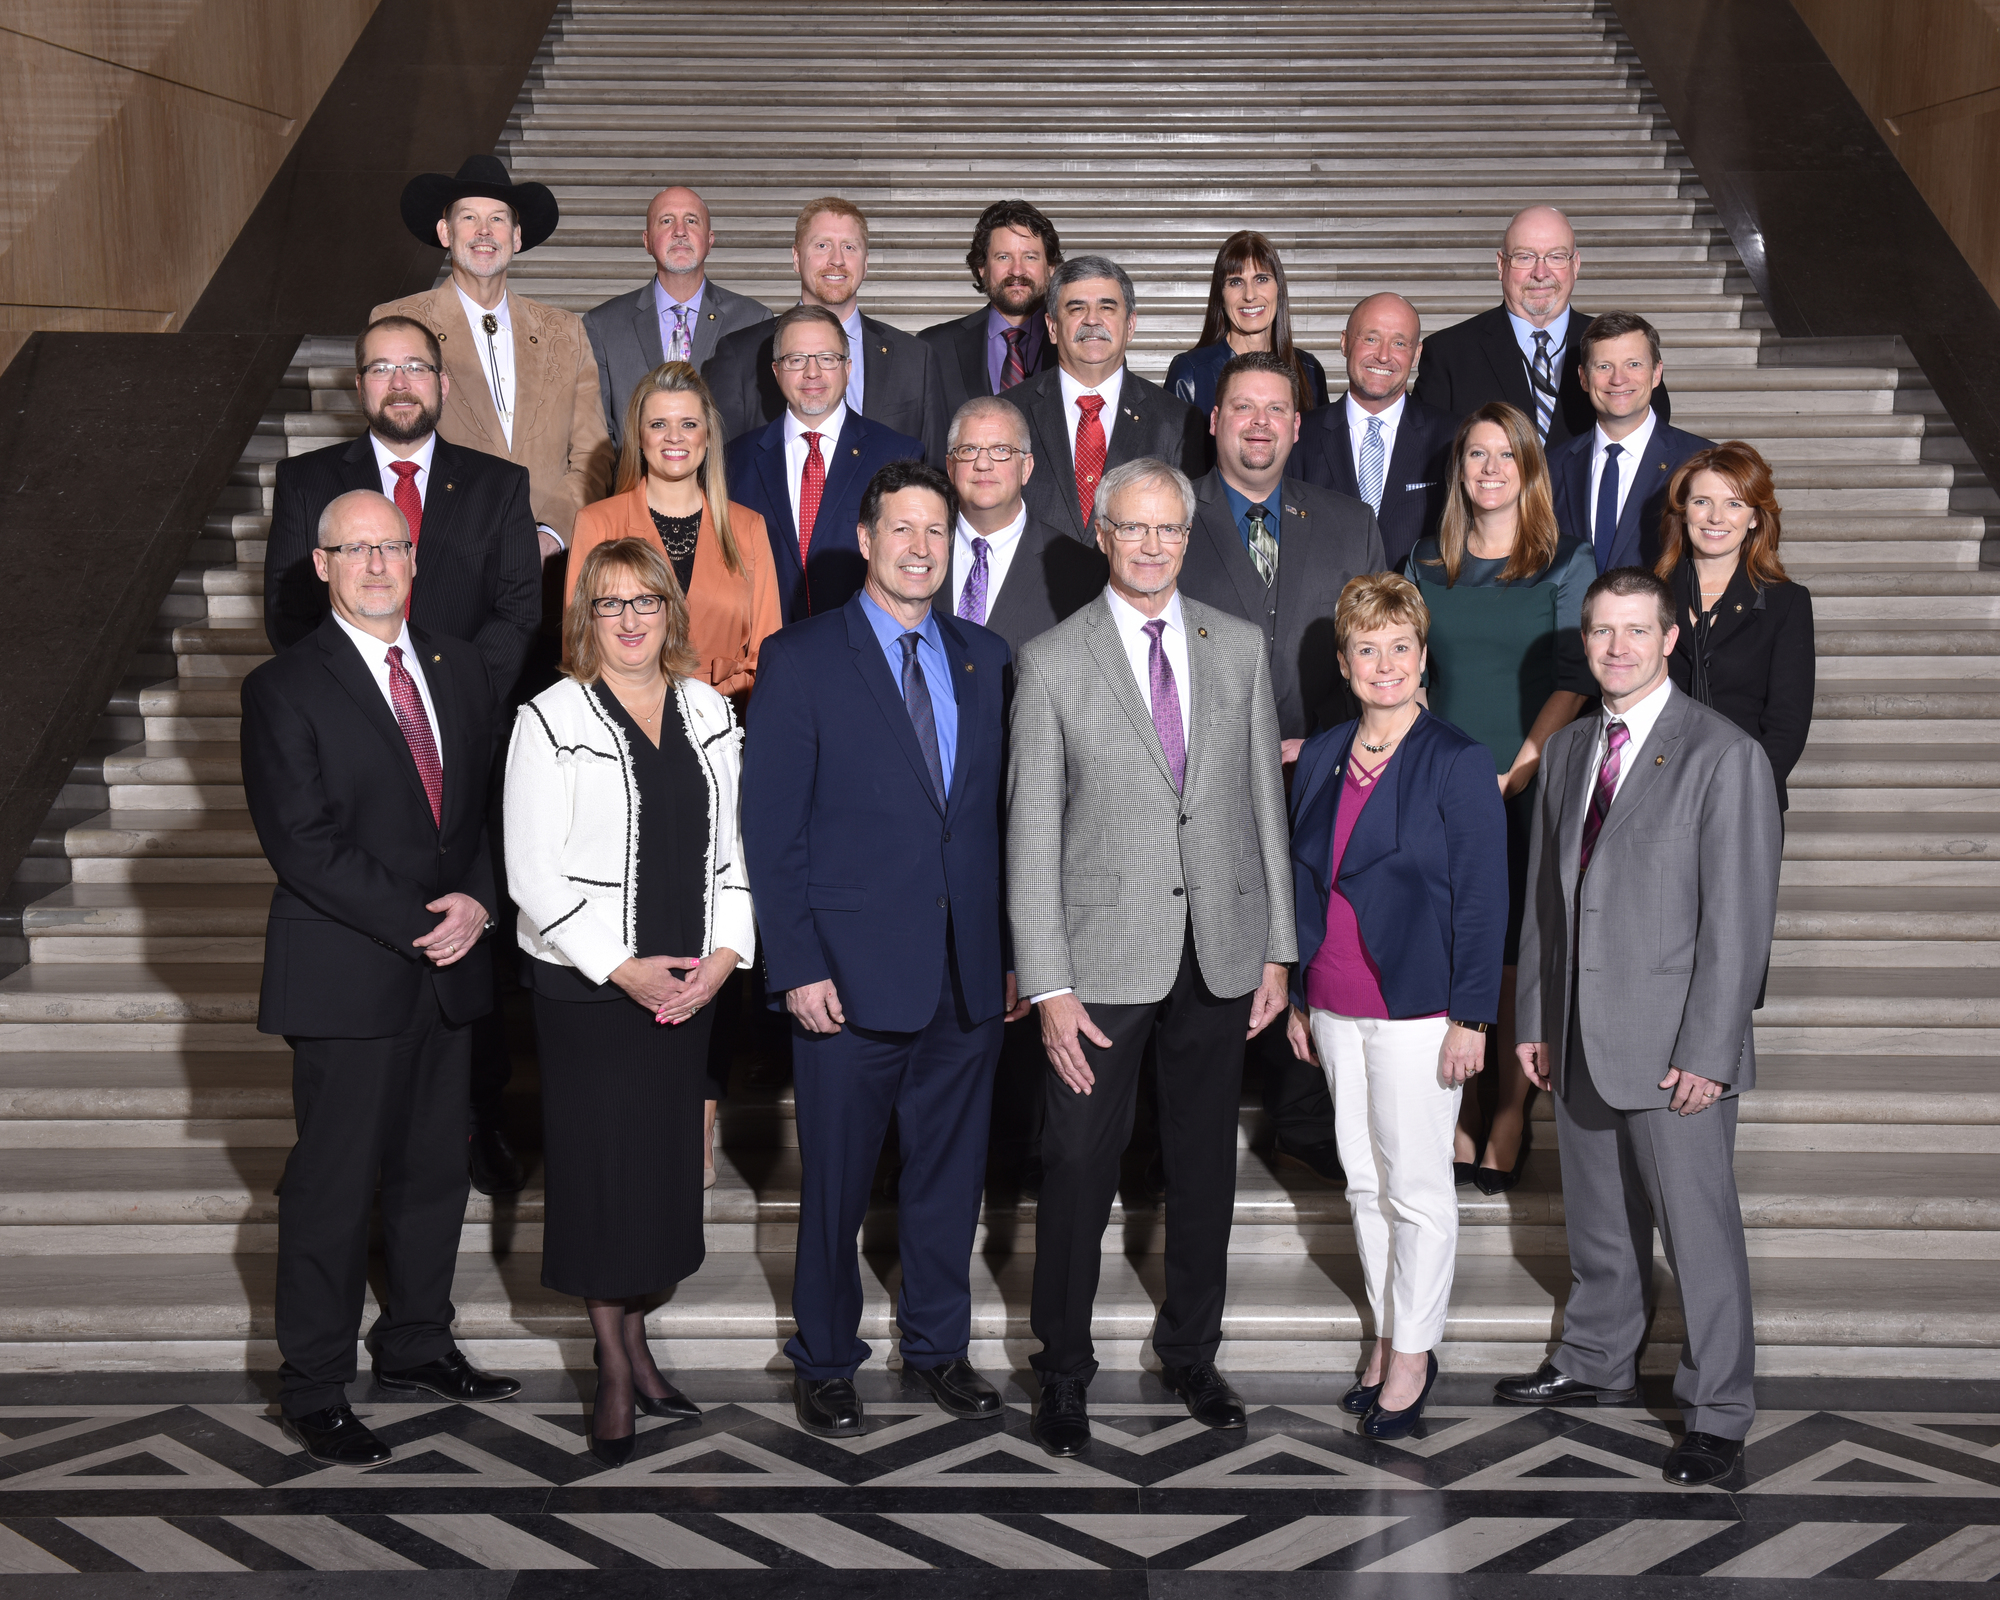 2019 GOP Caucus Group Photo